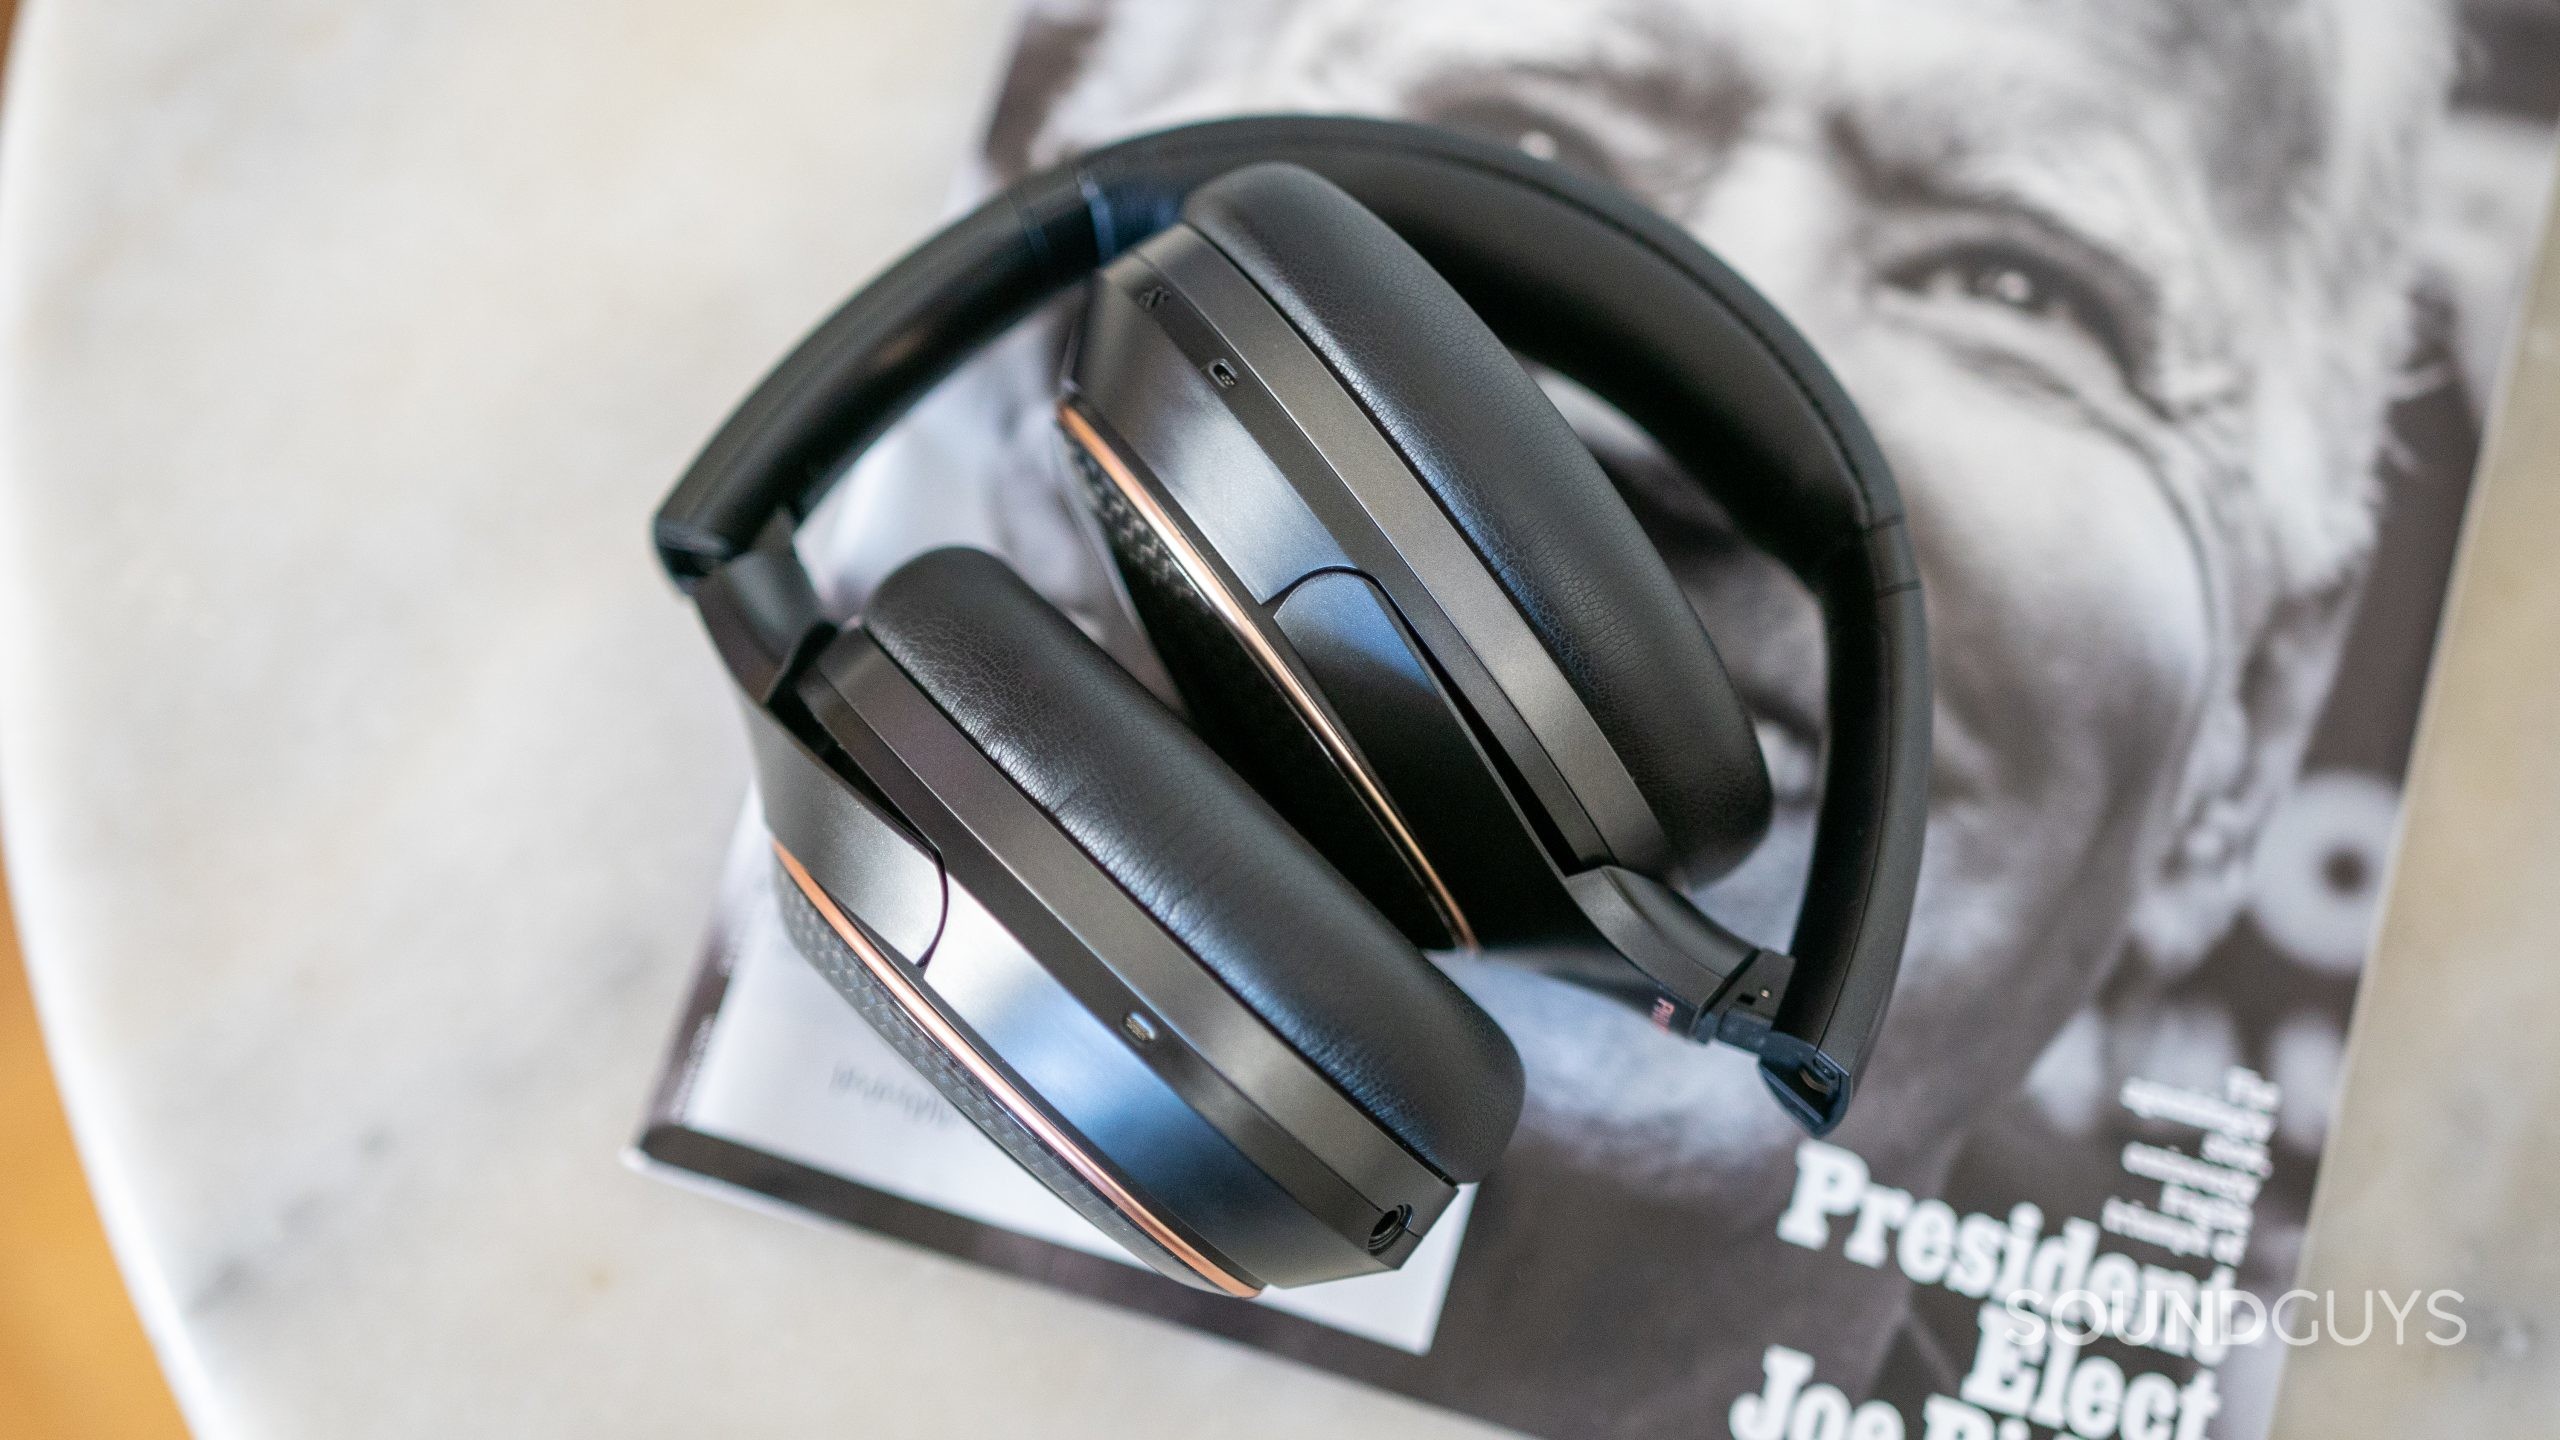 Phiaton 900 Legacy headphones folded on top of magazine on marble table.